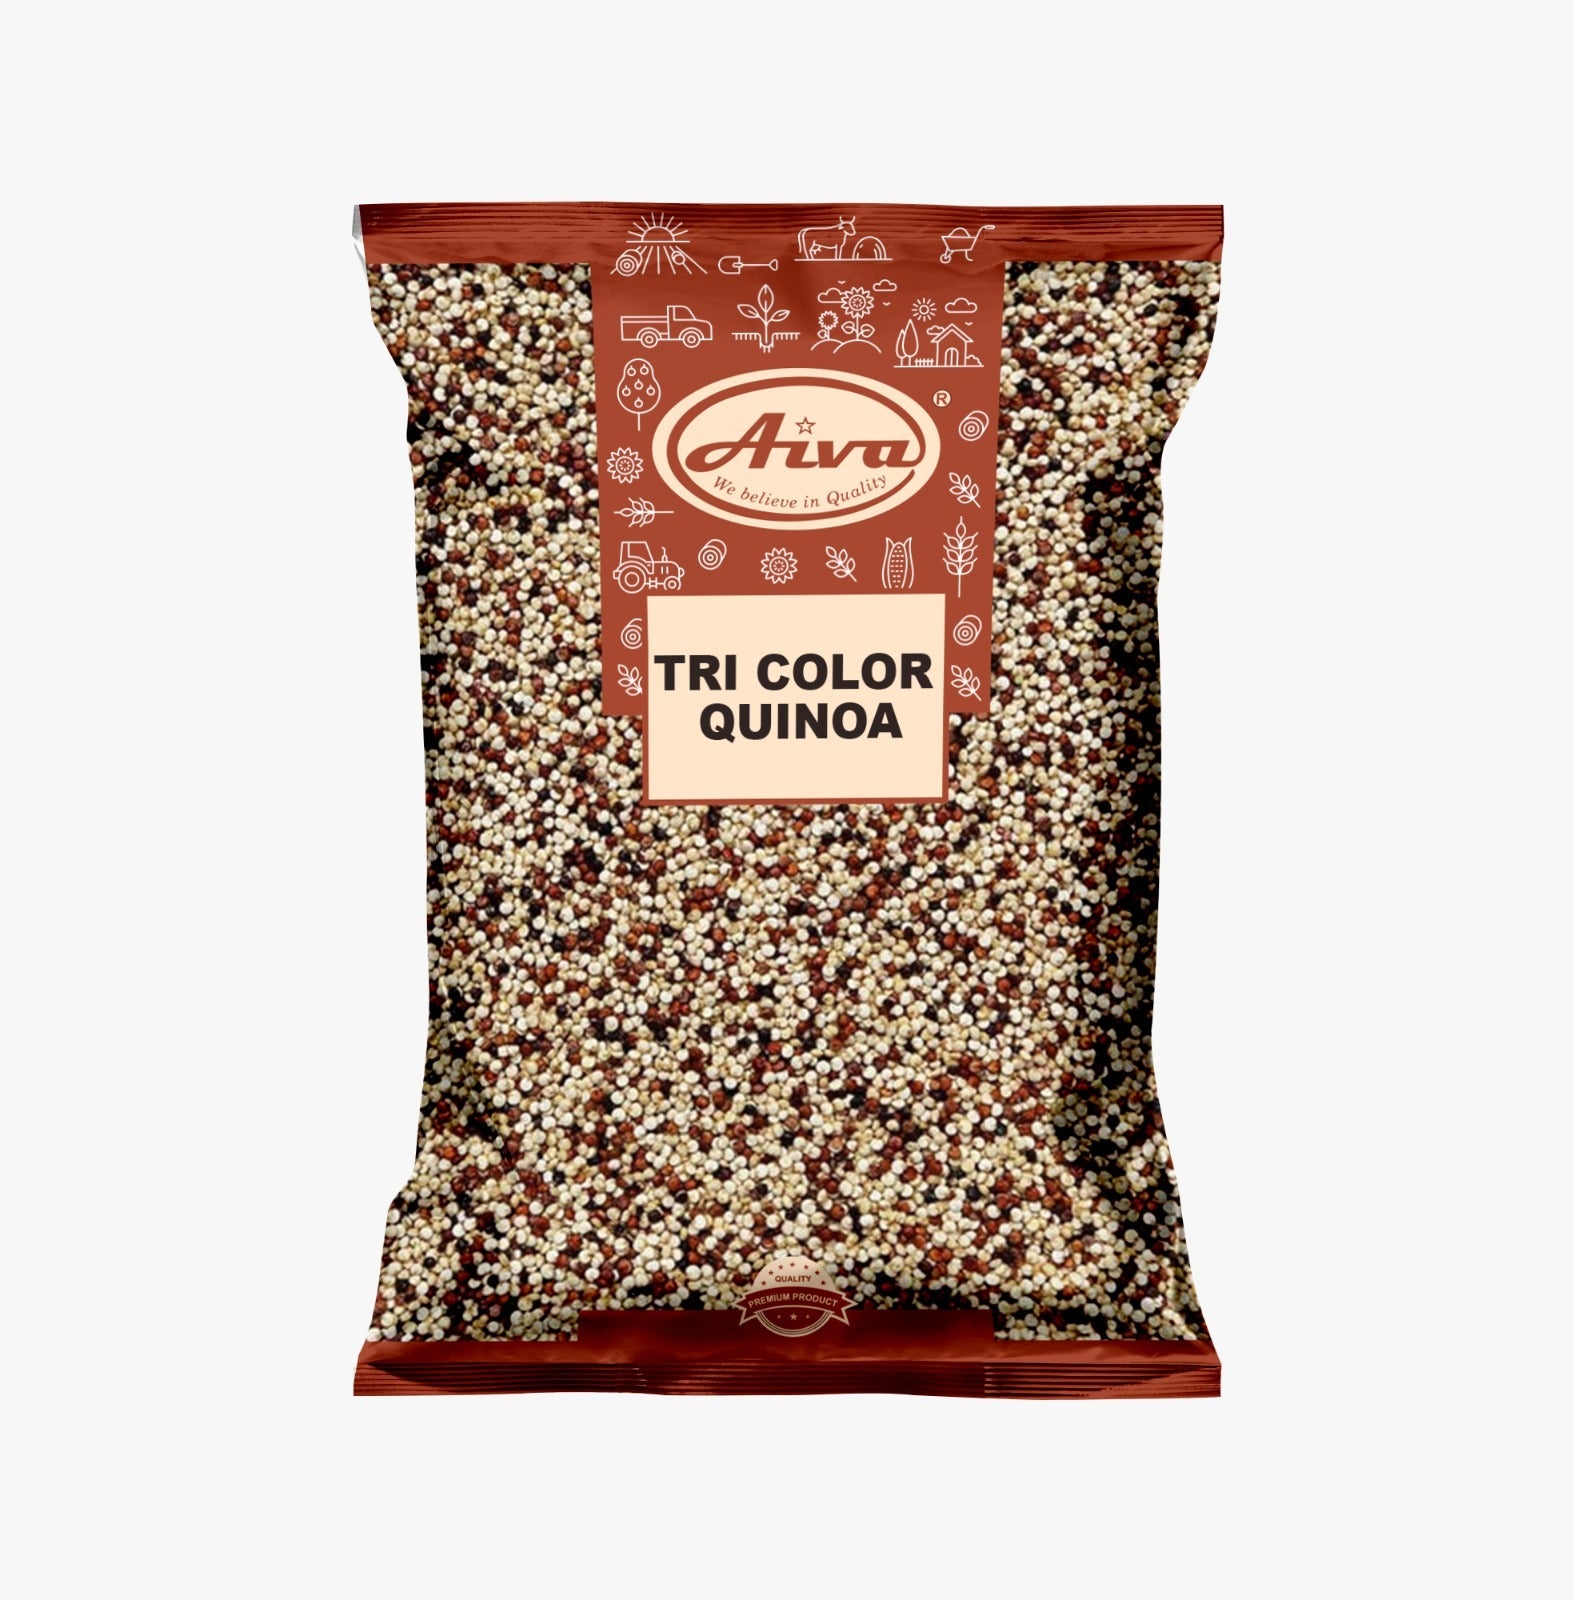 Aiva Tri Color Quinoa Seeds-1